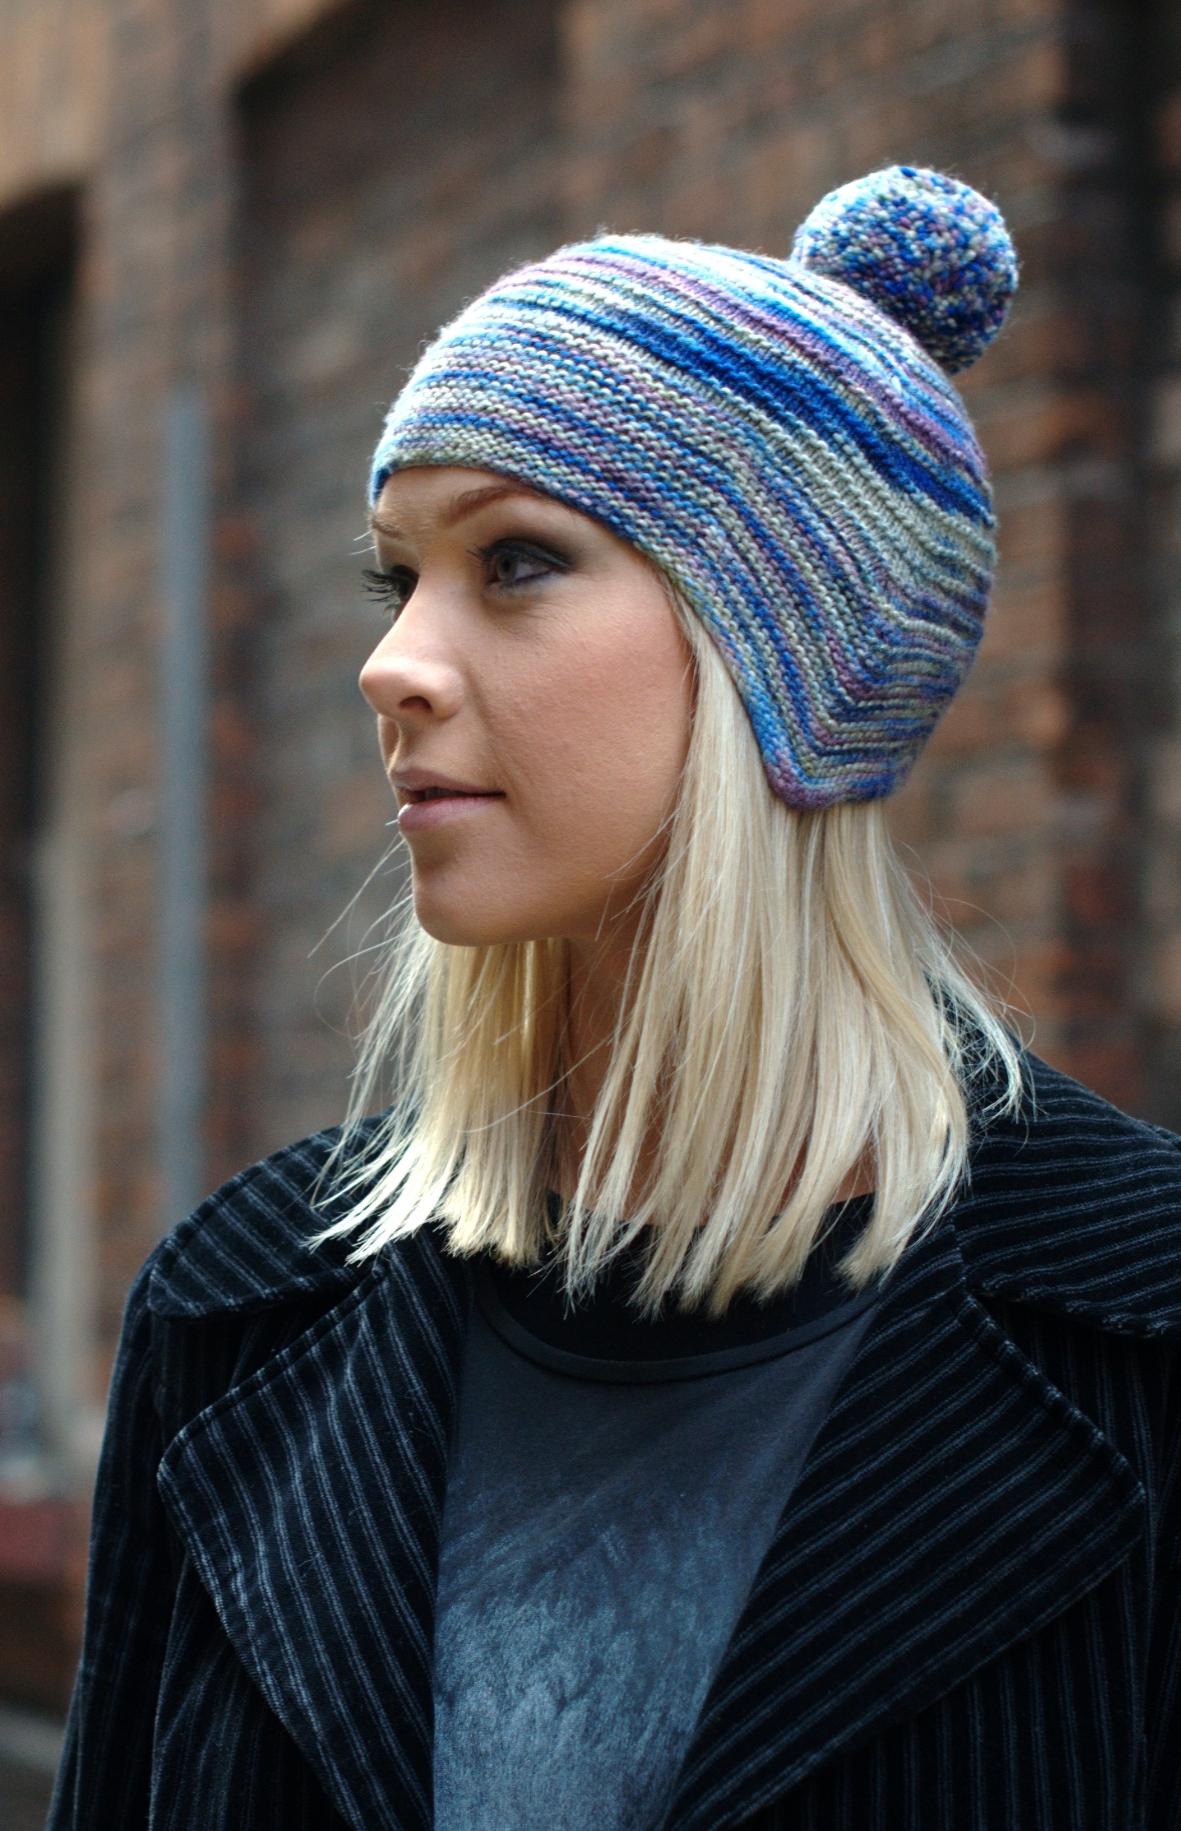 Cornice chullo Hat knitting pattern